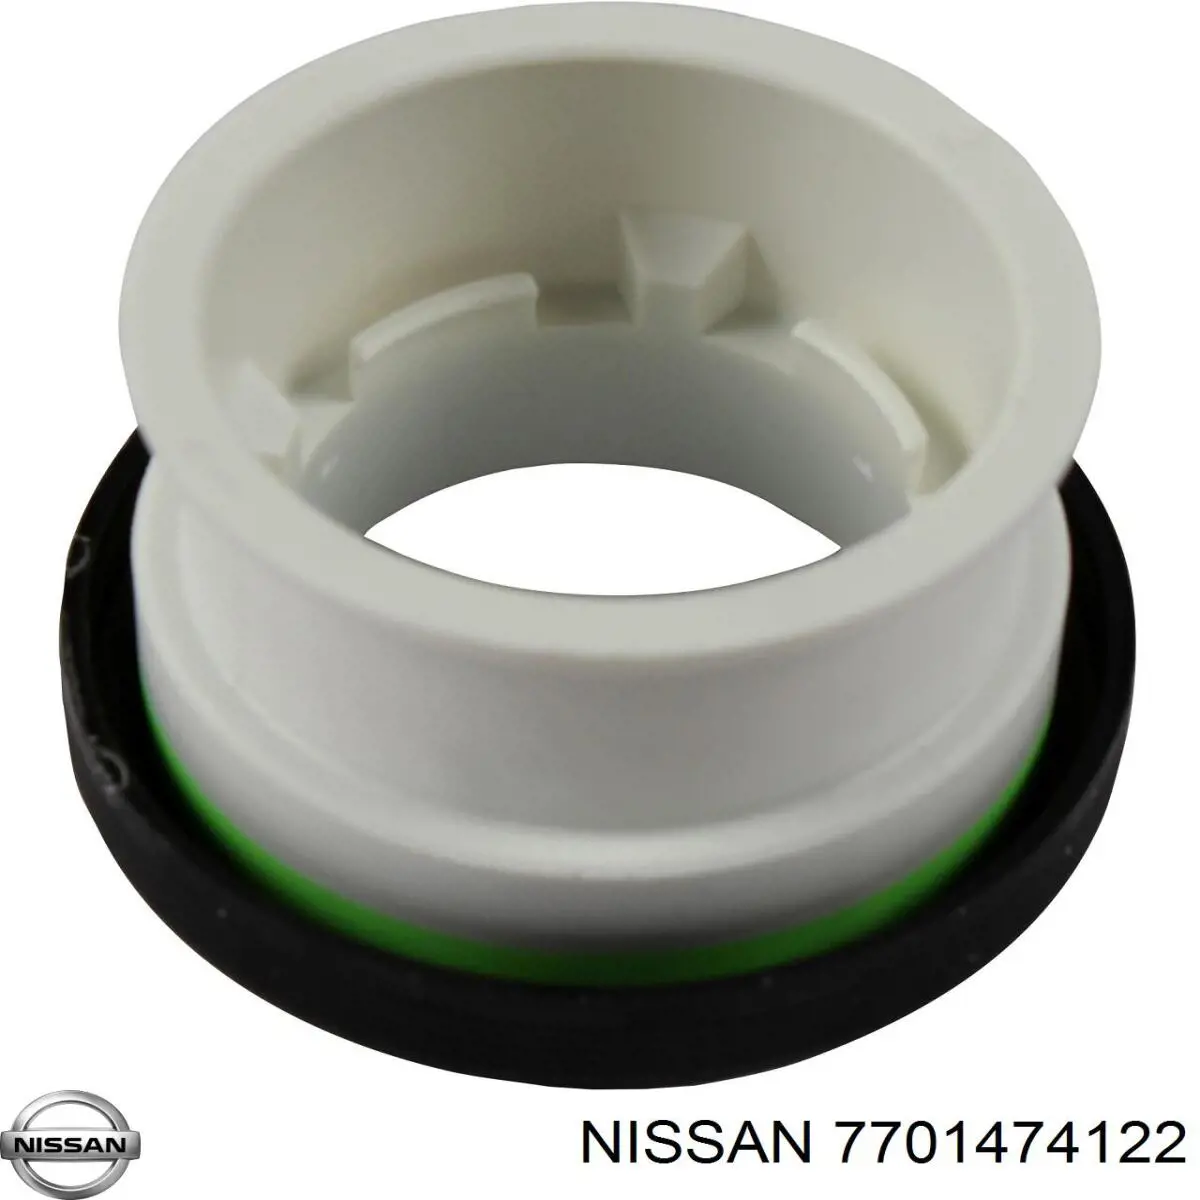 7701474122 Nissan anillo retén de semieje, eje delantero, derecho